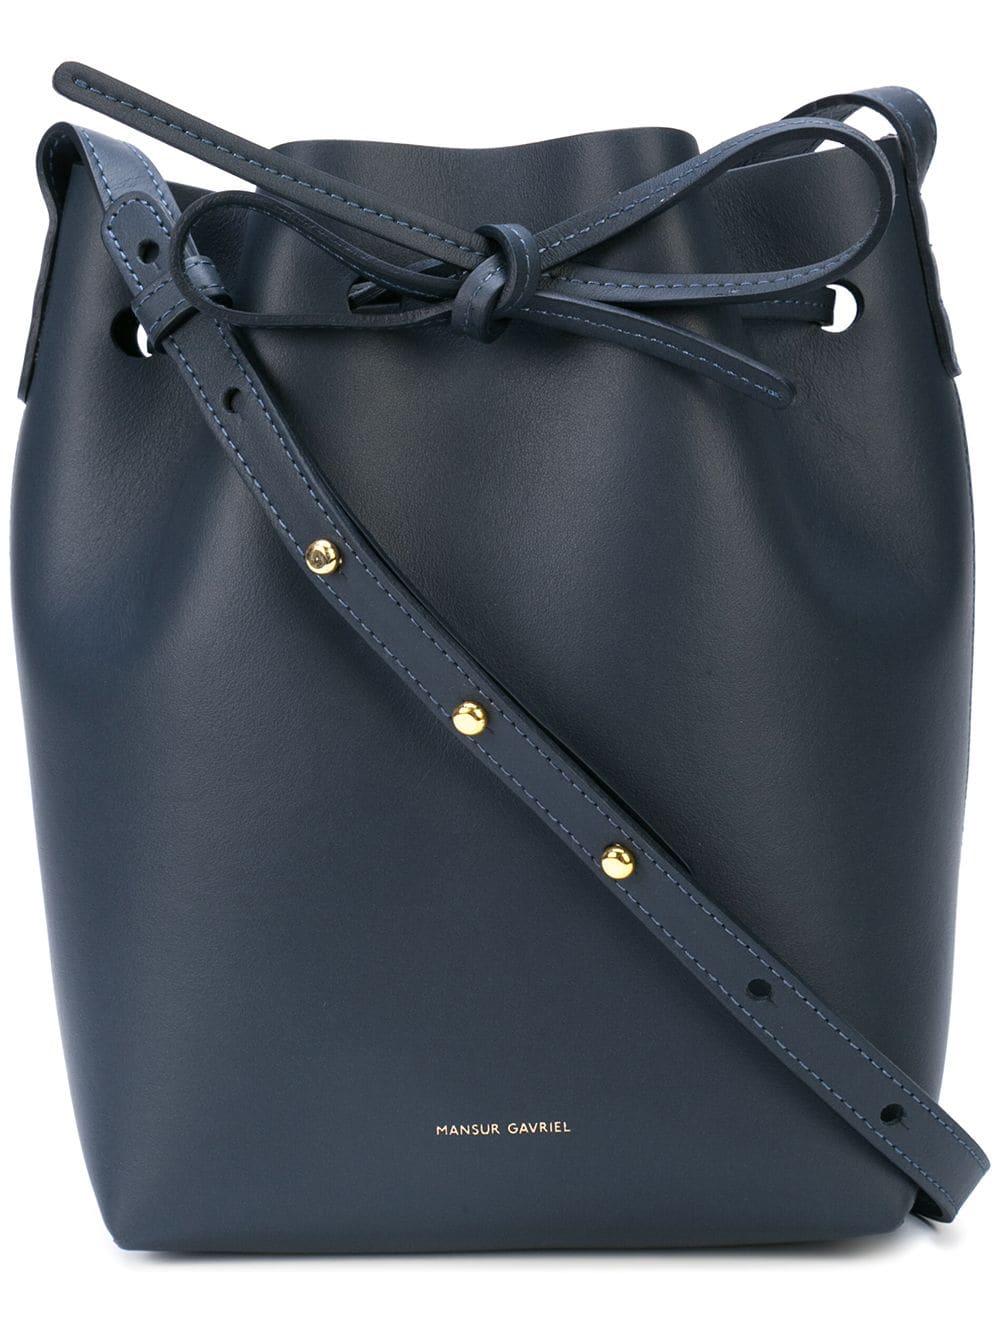 Mansur Gavriel Leather Mini Bucket Bag in Blue - Lyst